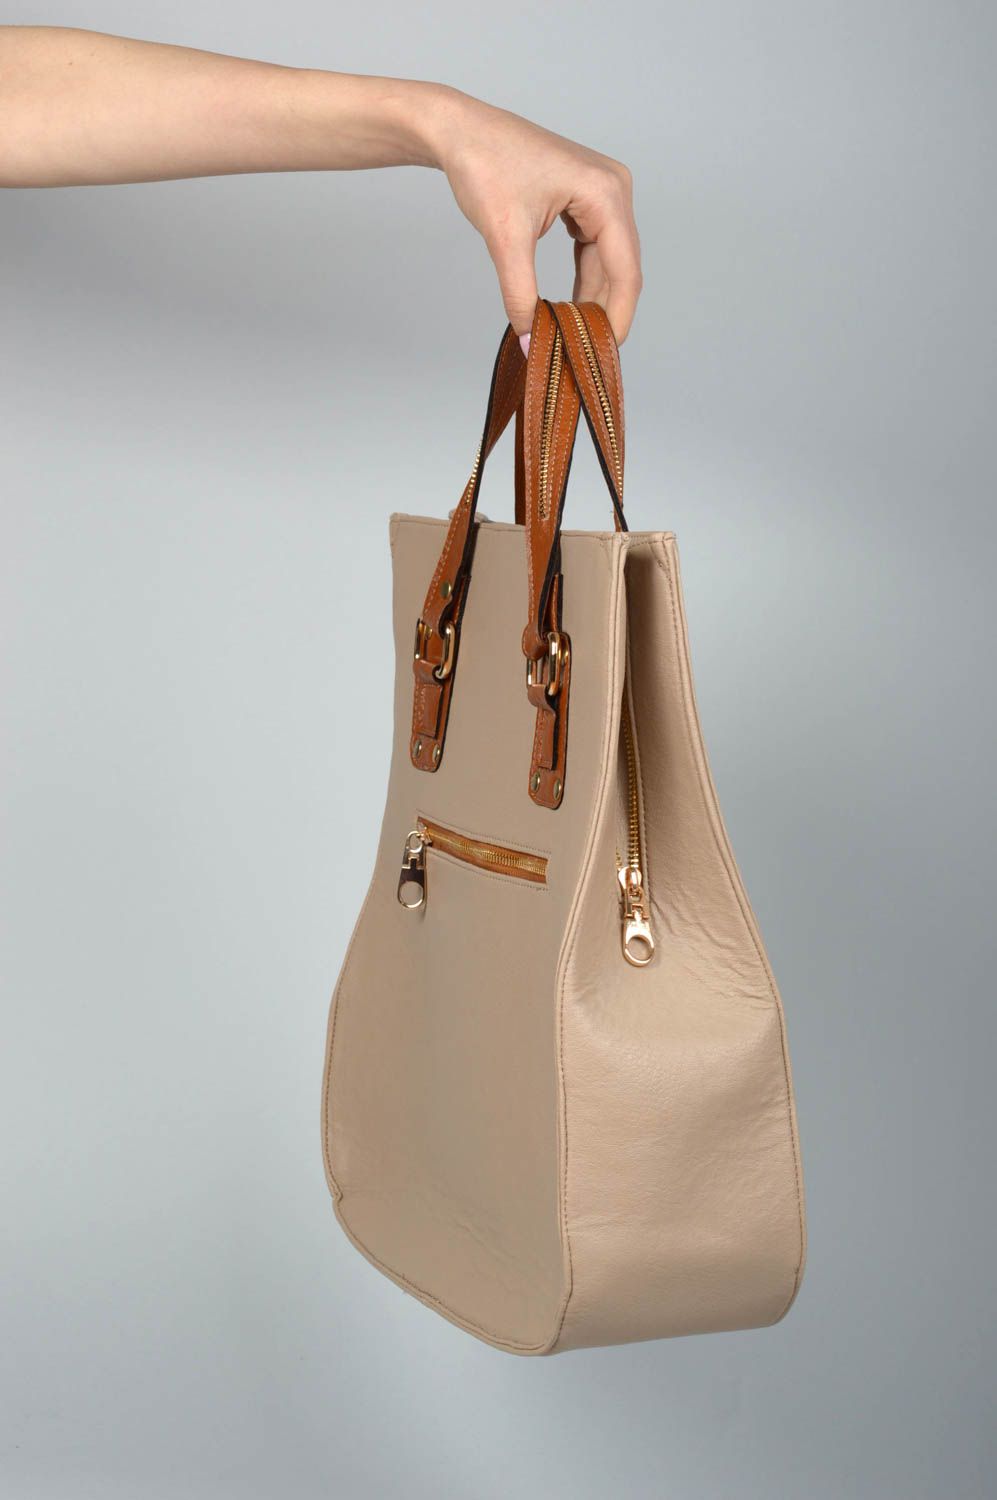 Tasche aus Kunstleder handgemachte Tasche Damen Ledertasche ausgefallene Tasche foto 2